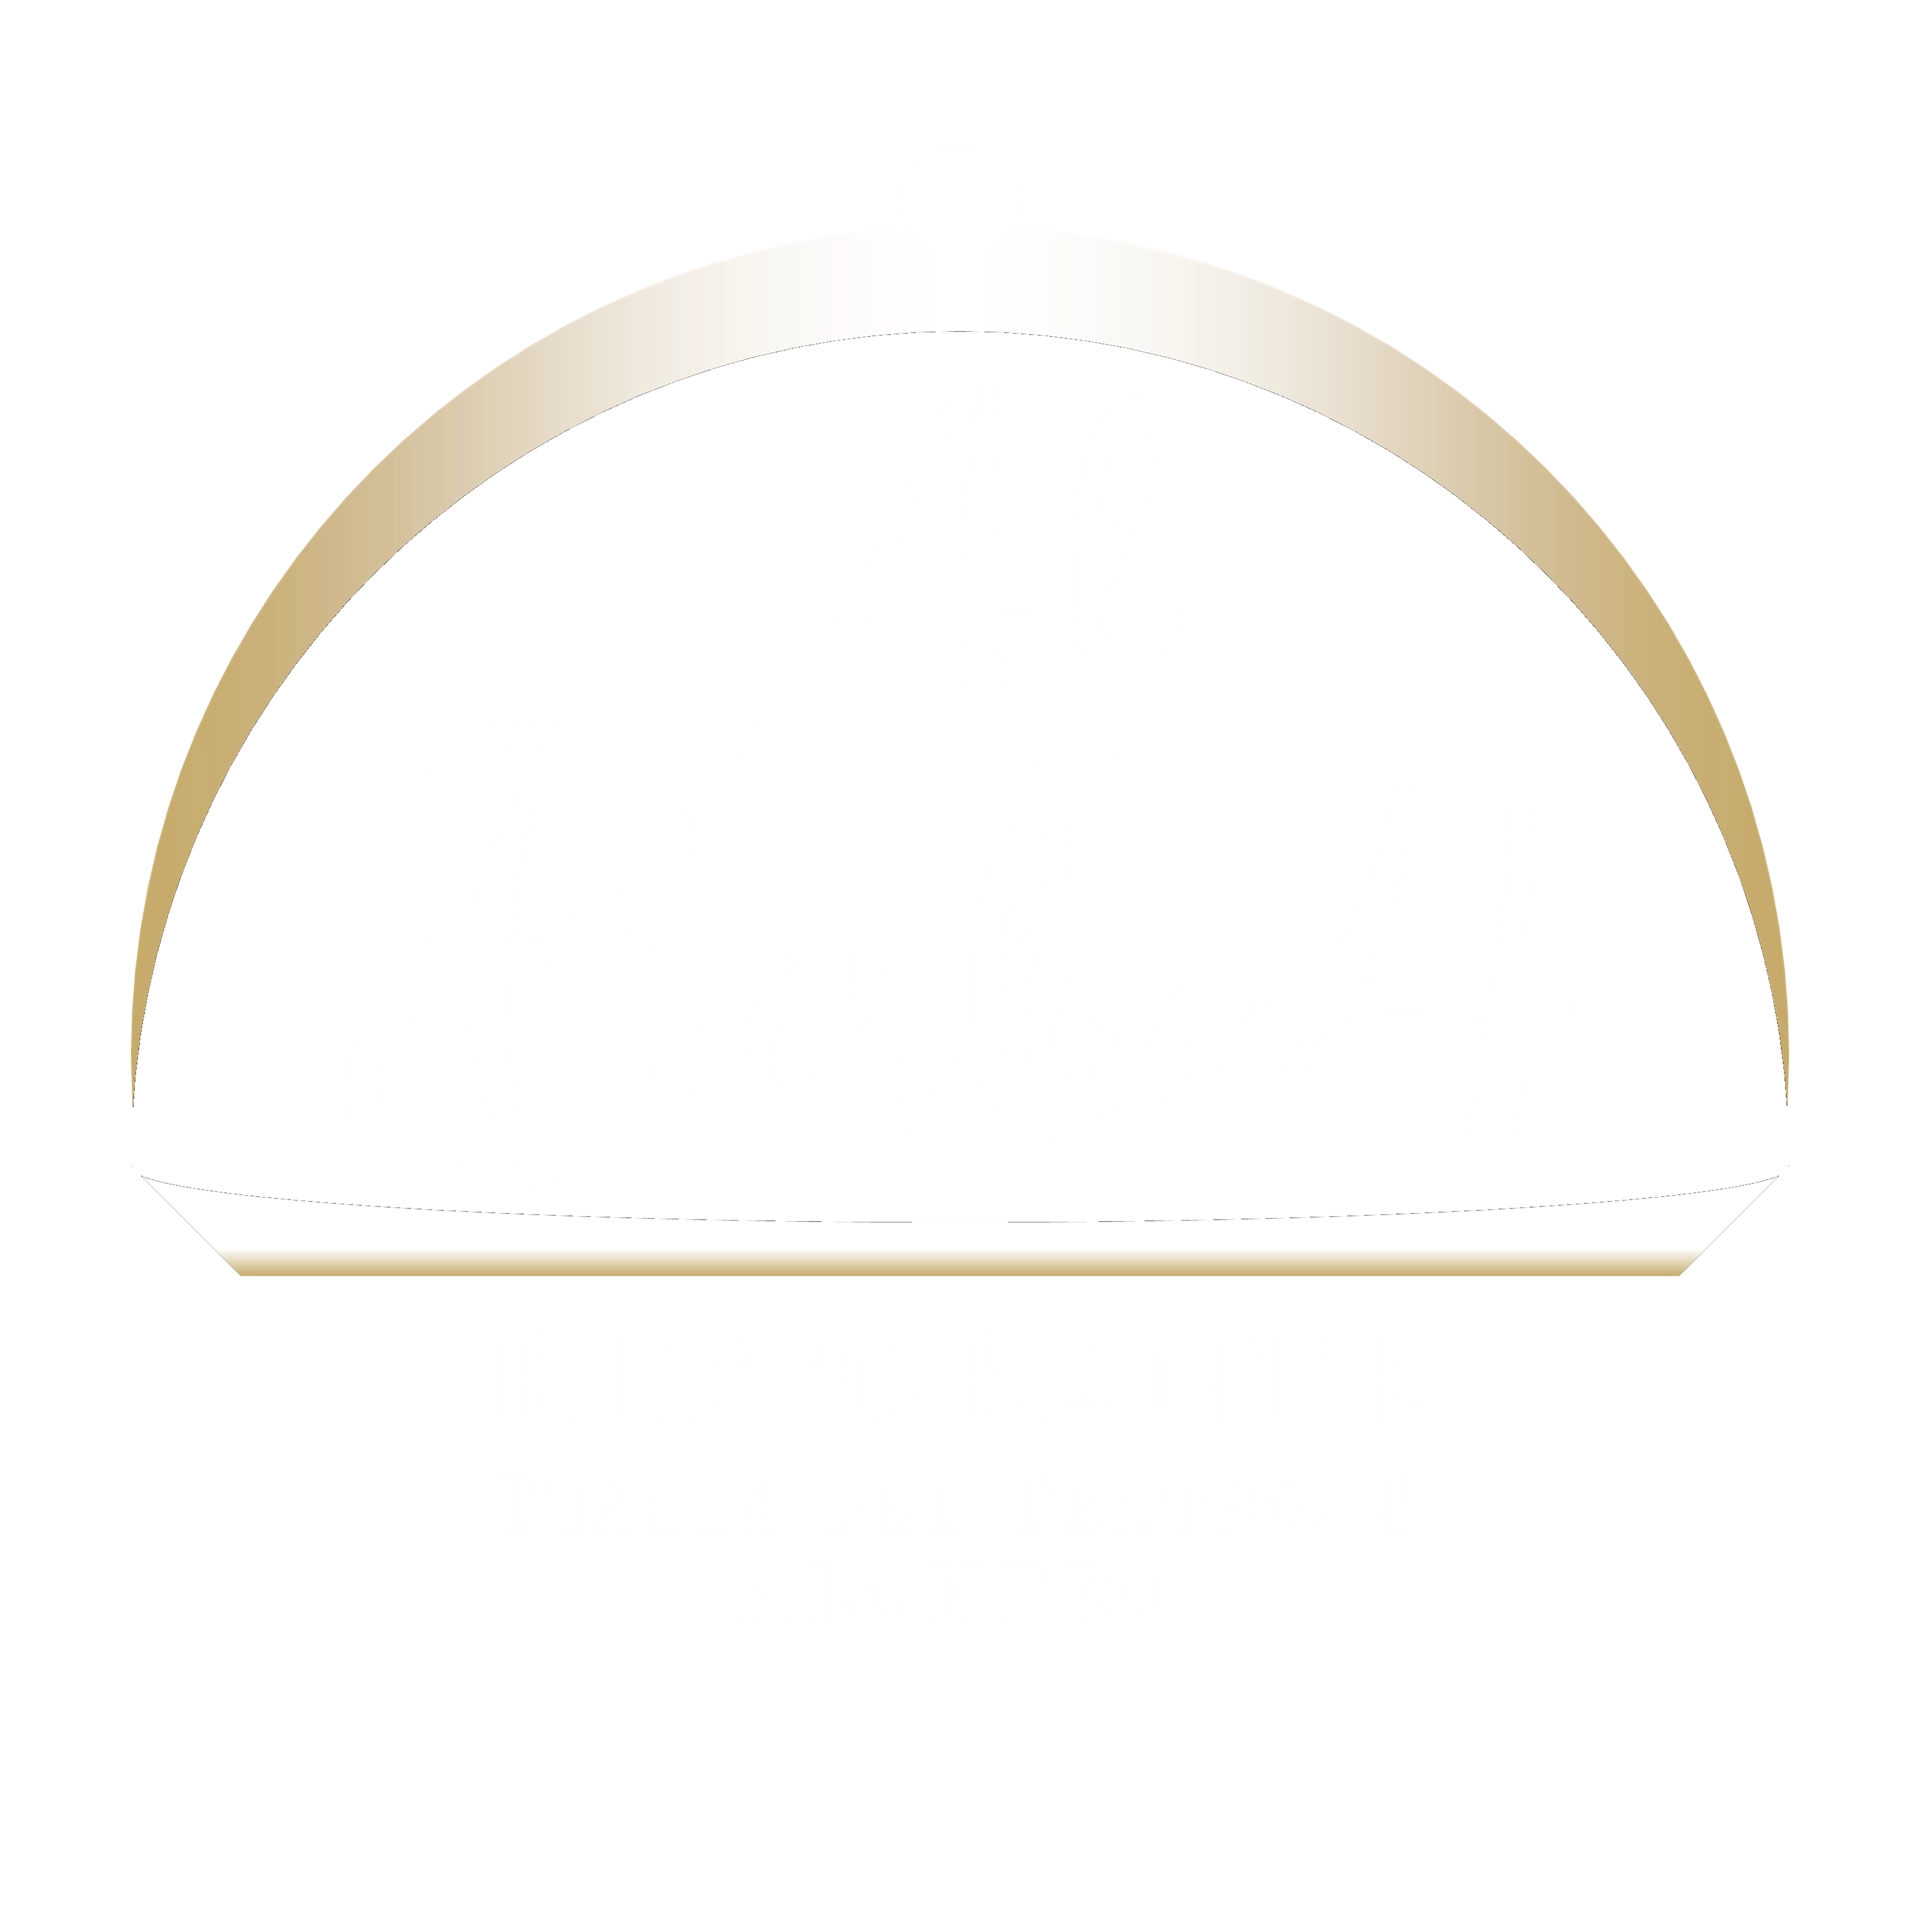 ALBISBE4 - Ristorante - Piazza del Teatro, 4 - Alghero